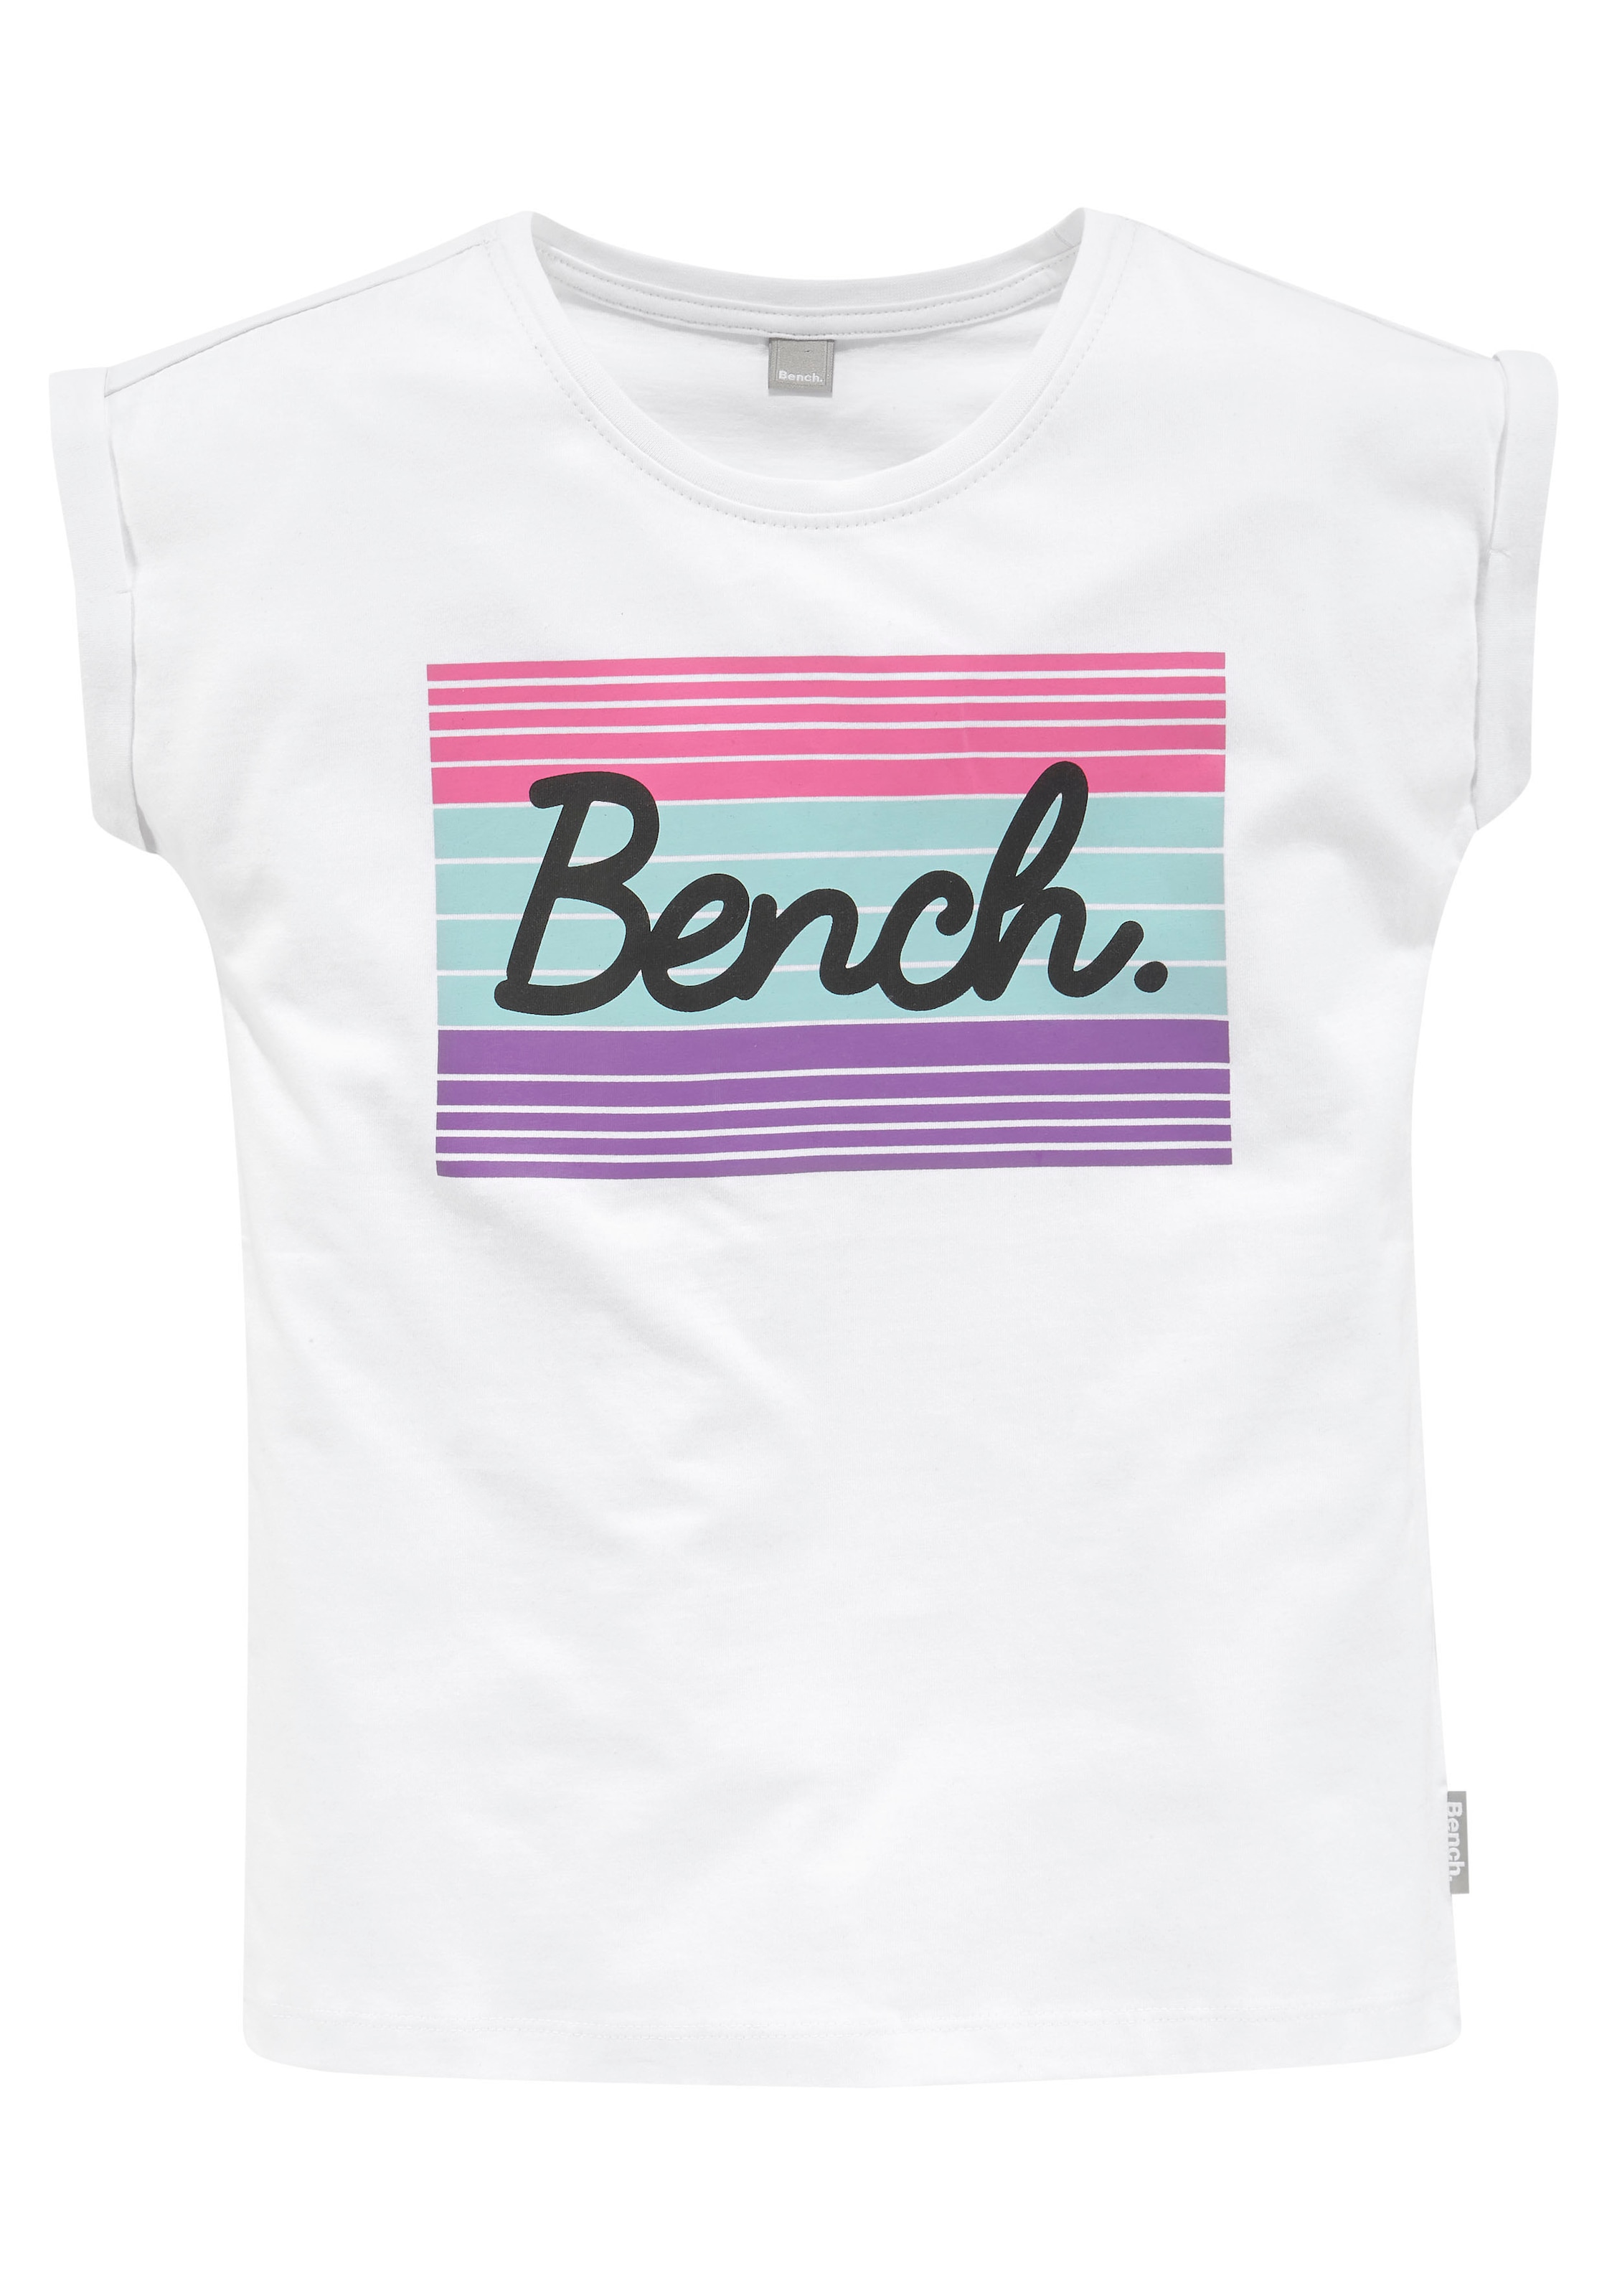 ✌ en Acheter grossem Logodruck Bench. ligne T-Shirt, mit